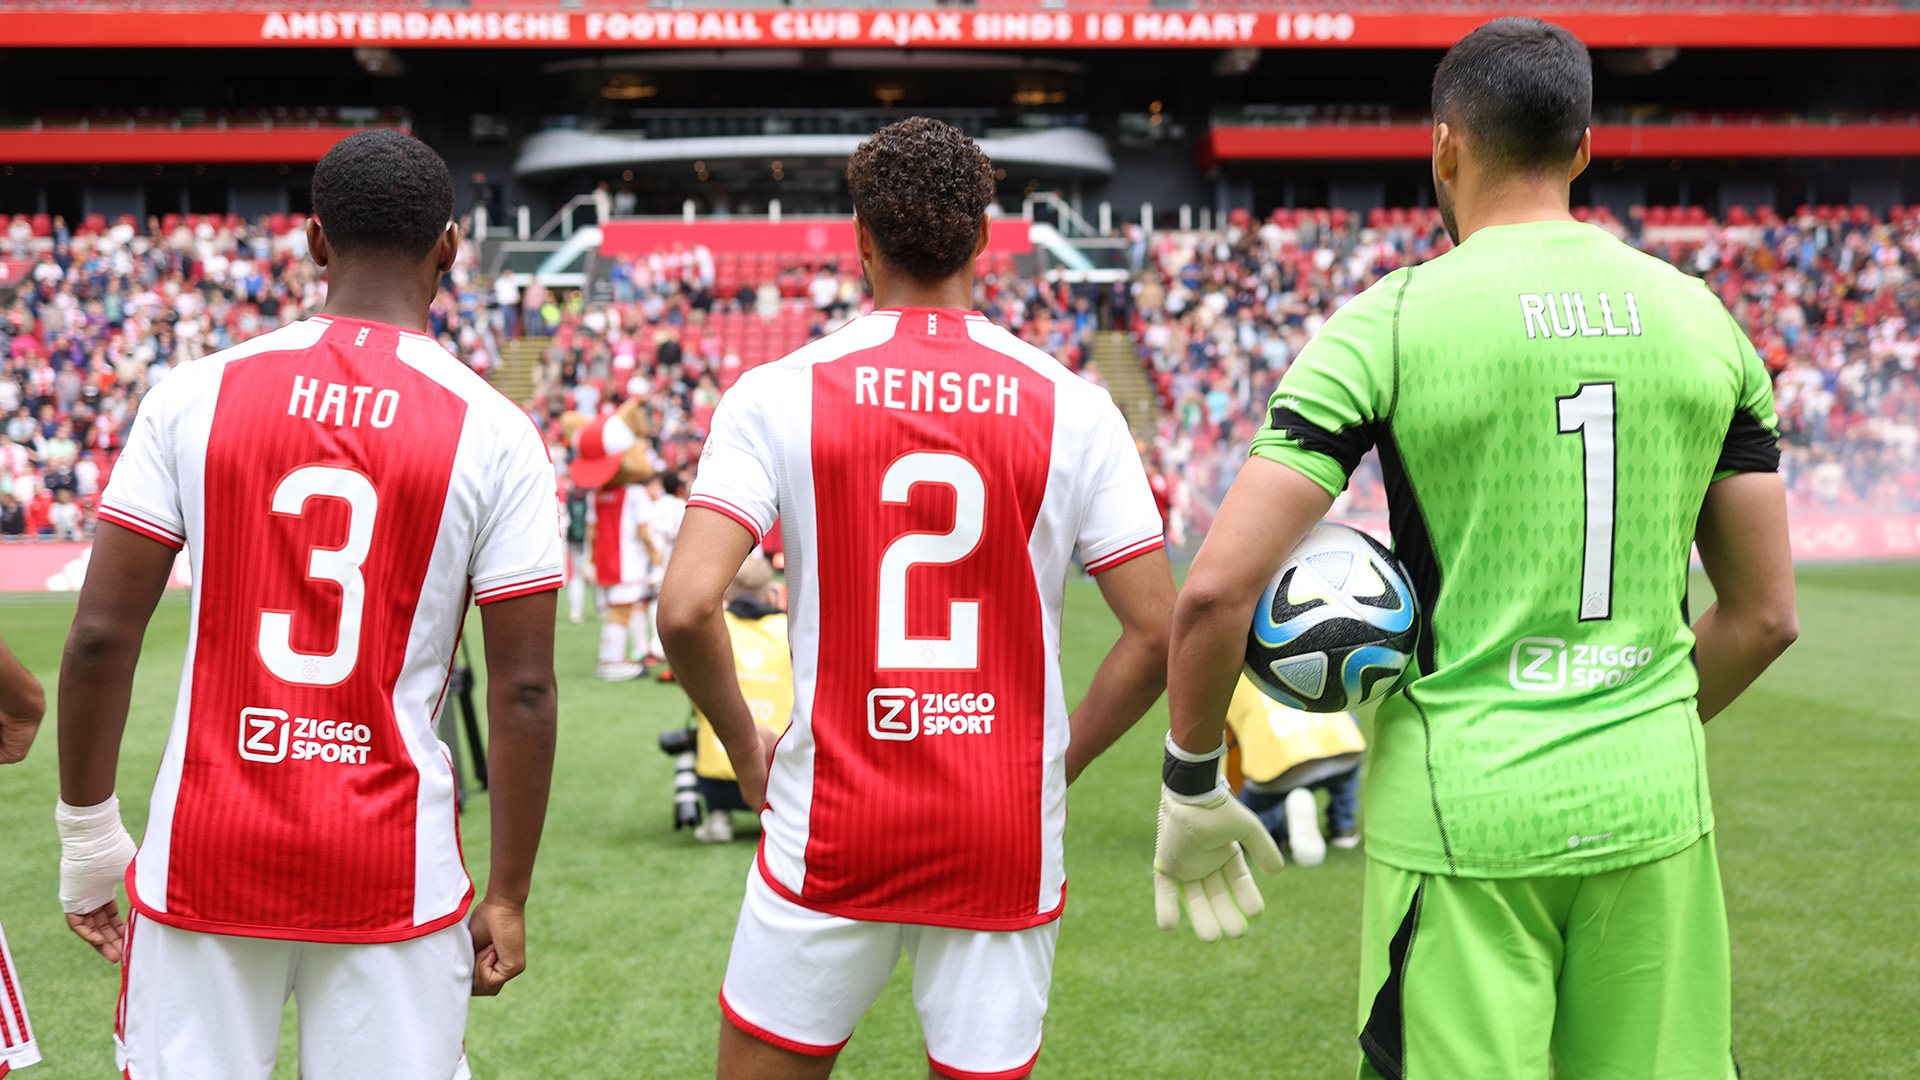 Mùa giải năm nay, Ajax Amsterdam đã có những sự khởi đầu khá chệch choạc